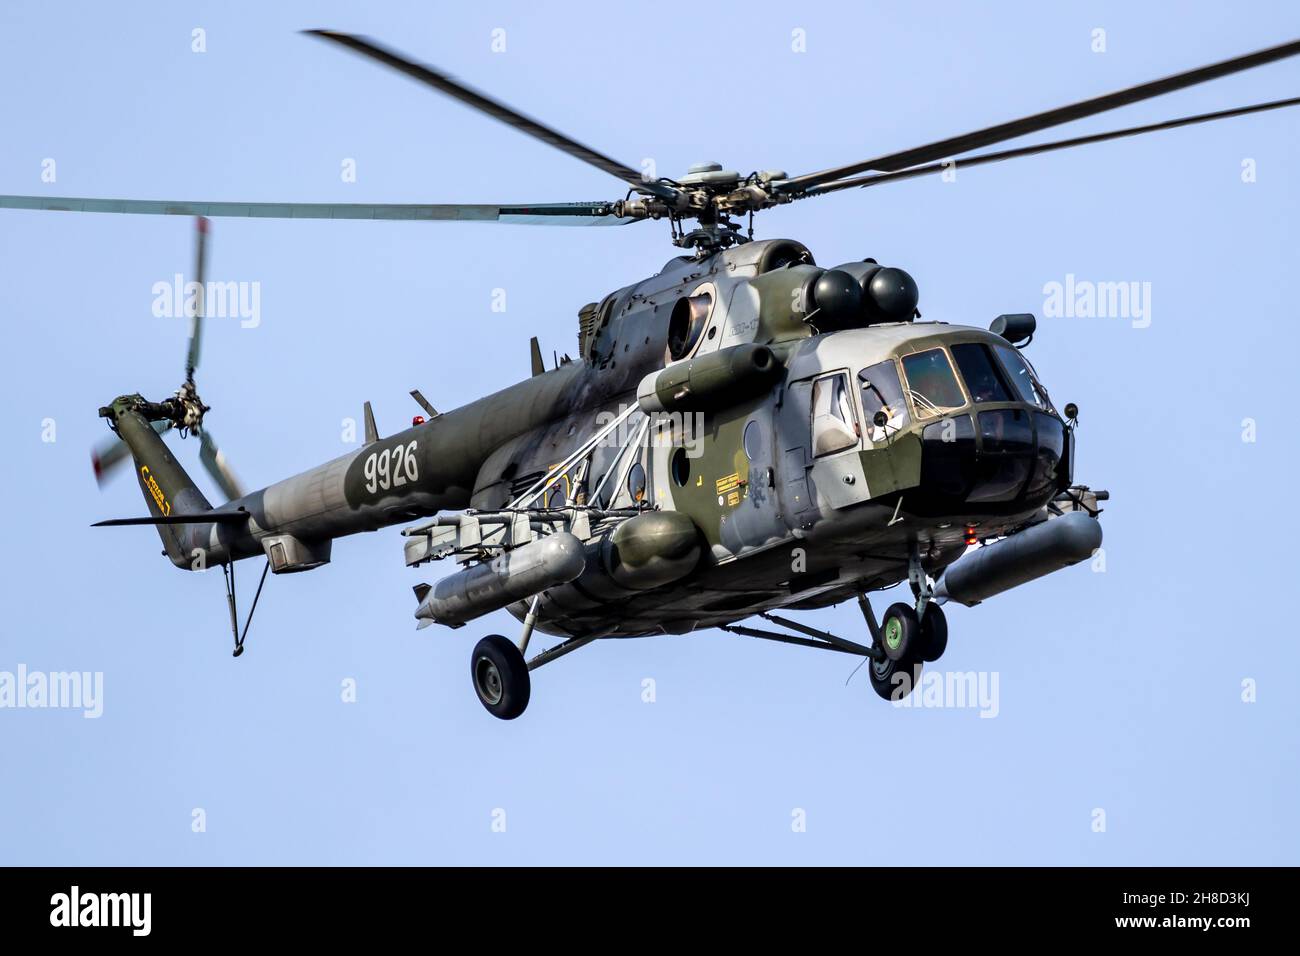 República Checa Fuerza Aérea Mil MI-171Sh transporte y helicóptero de ataque en vuelo sobre la Base Aérea Kleine-Brogel, Bélgica - 13 de septiembre de 2021 Foto de stock